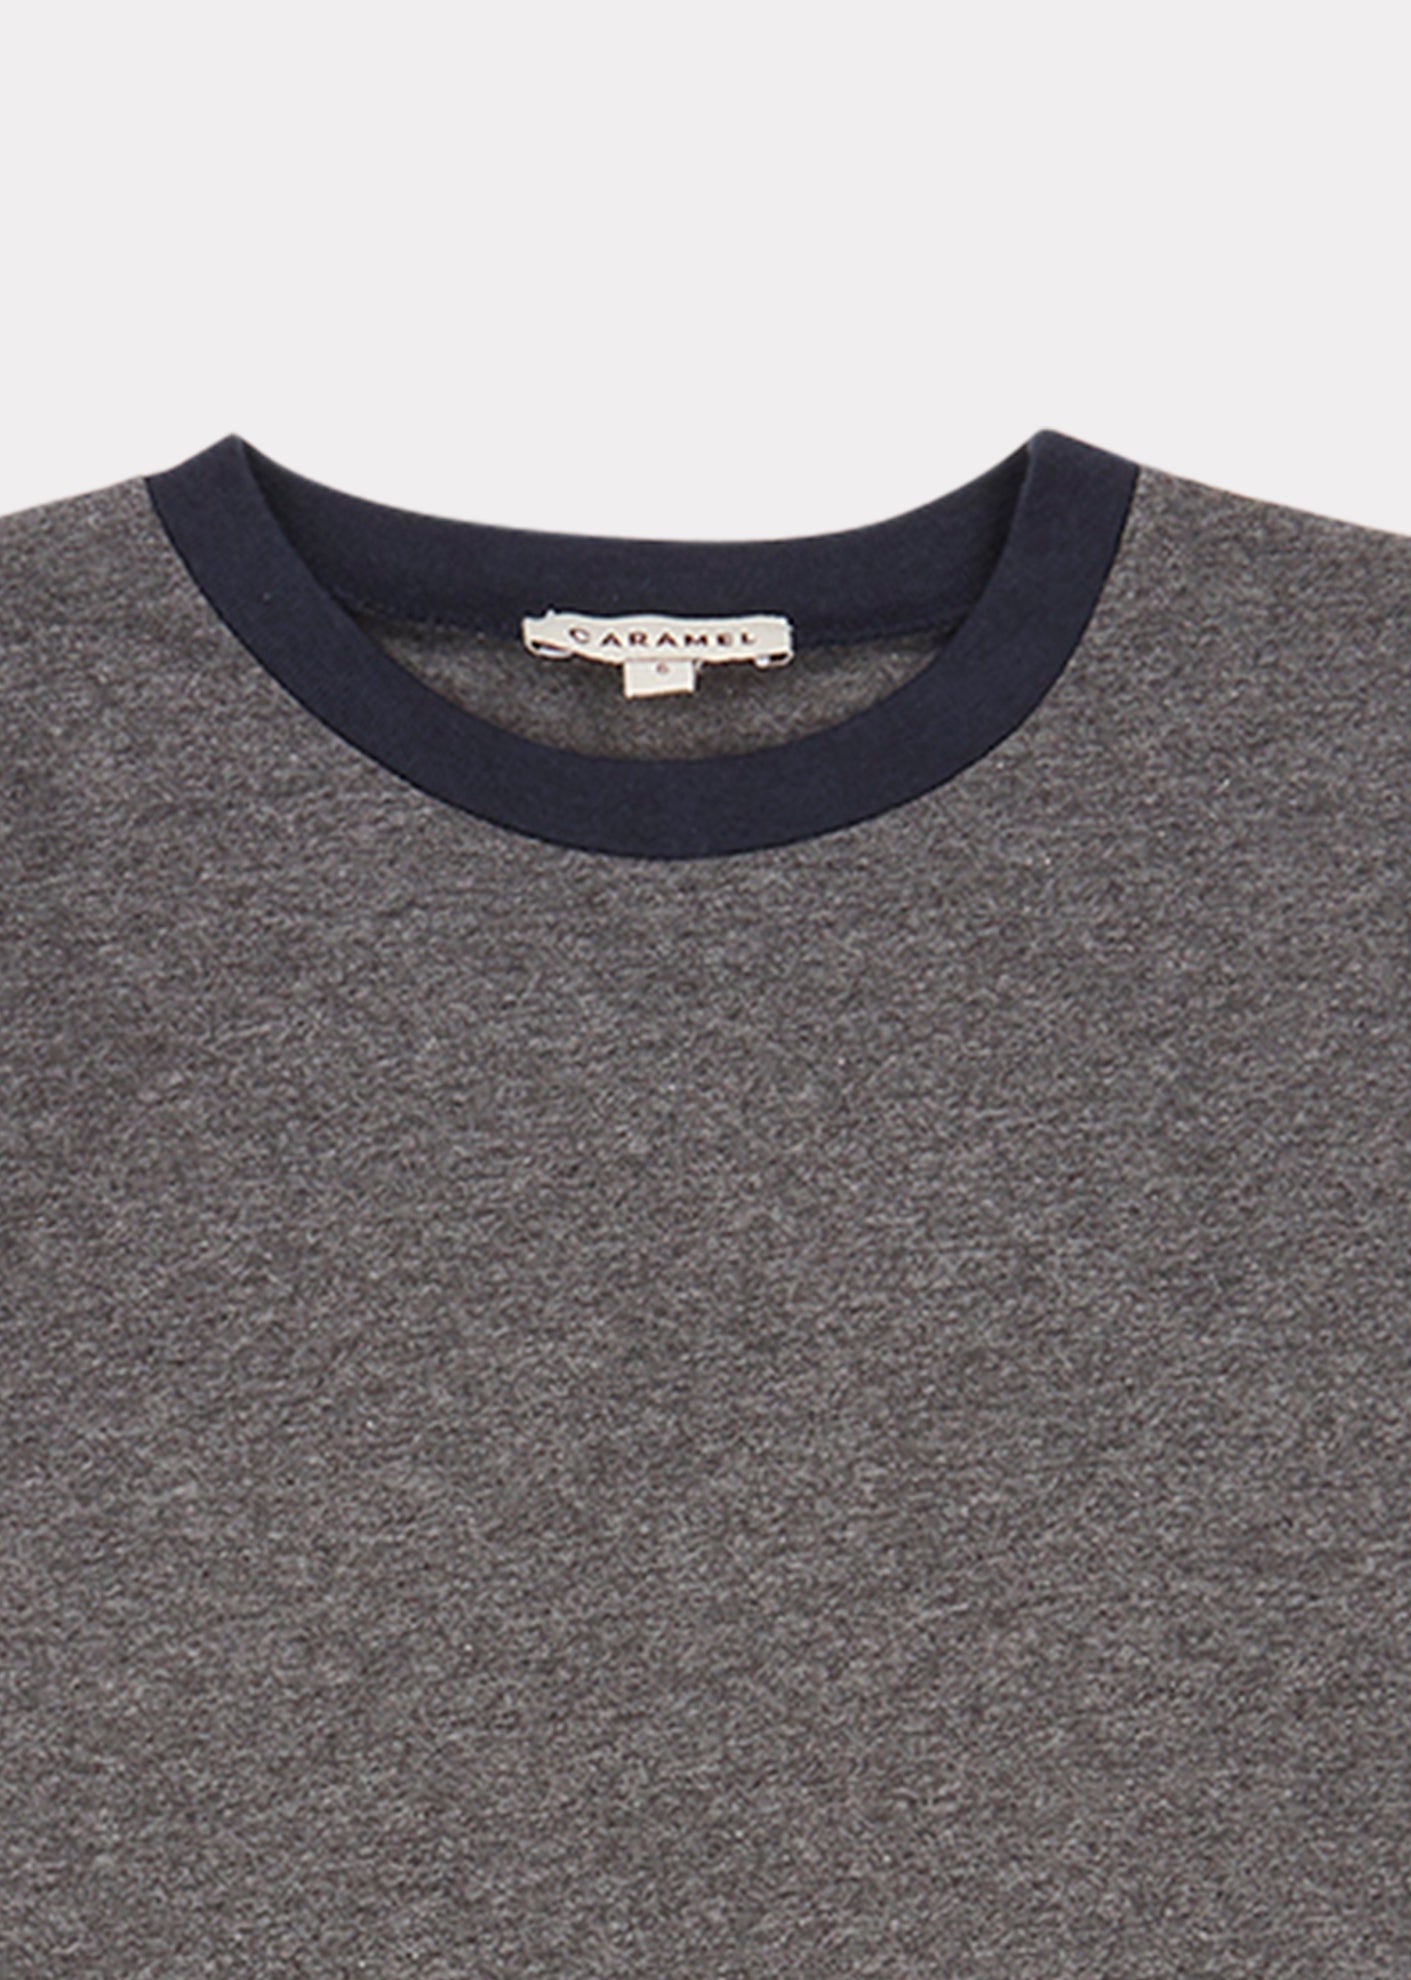 Boys & Girls Grey Melange Crake T-Shirt